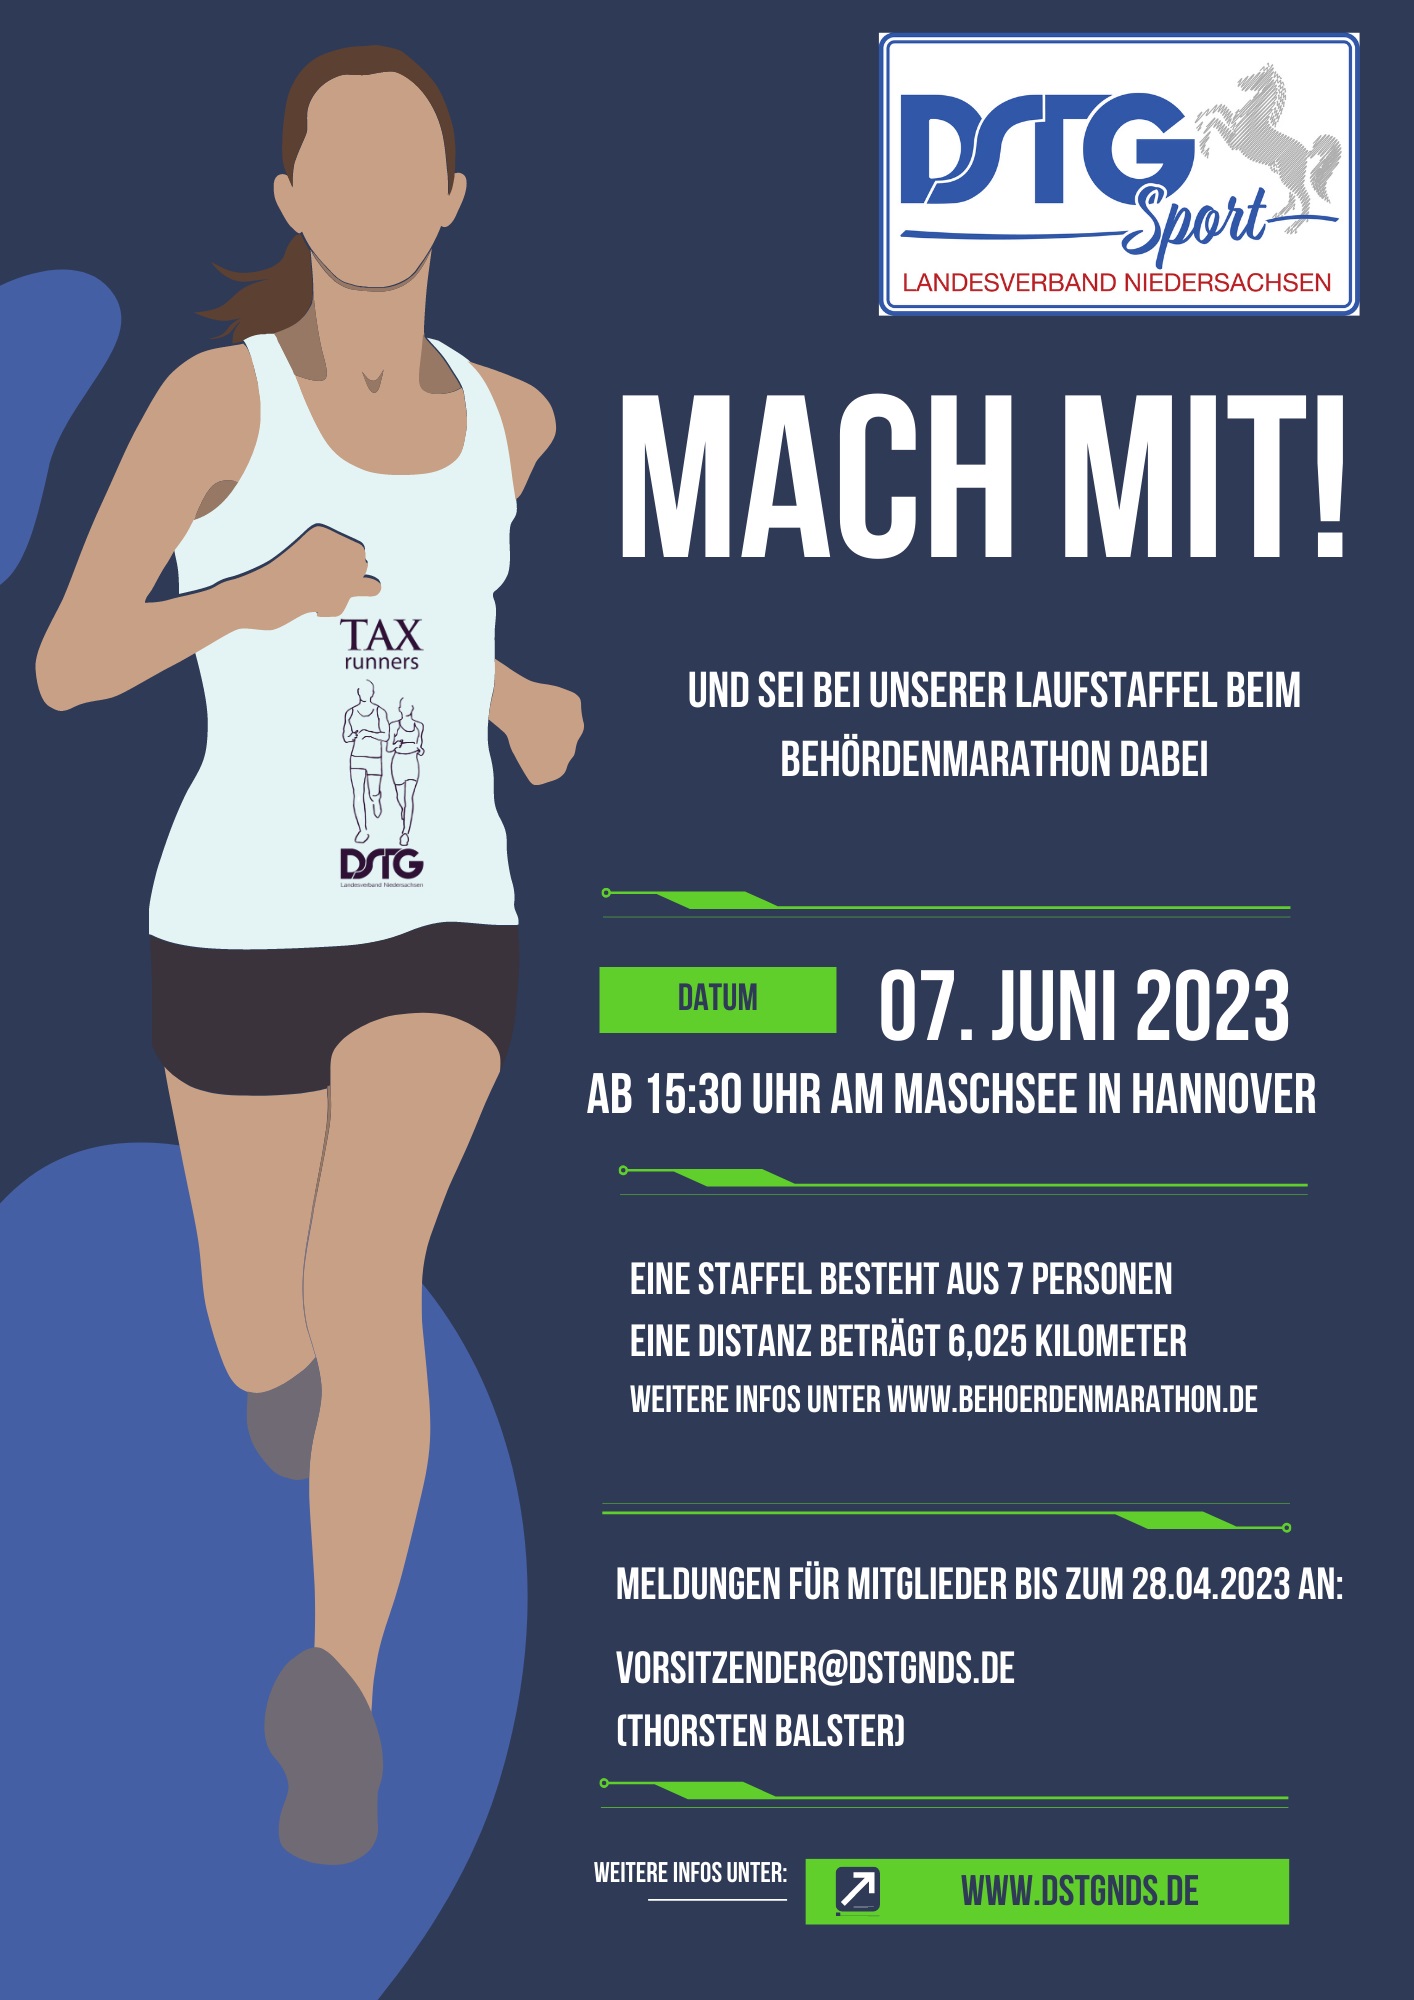 Behoerdenmarathon23